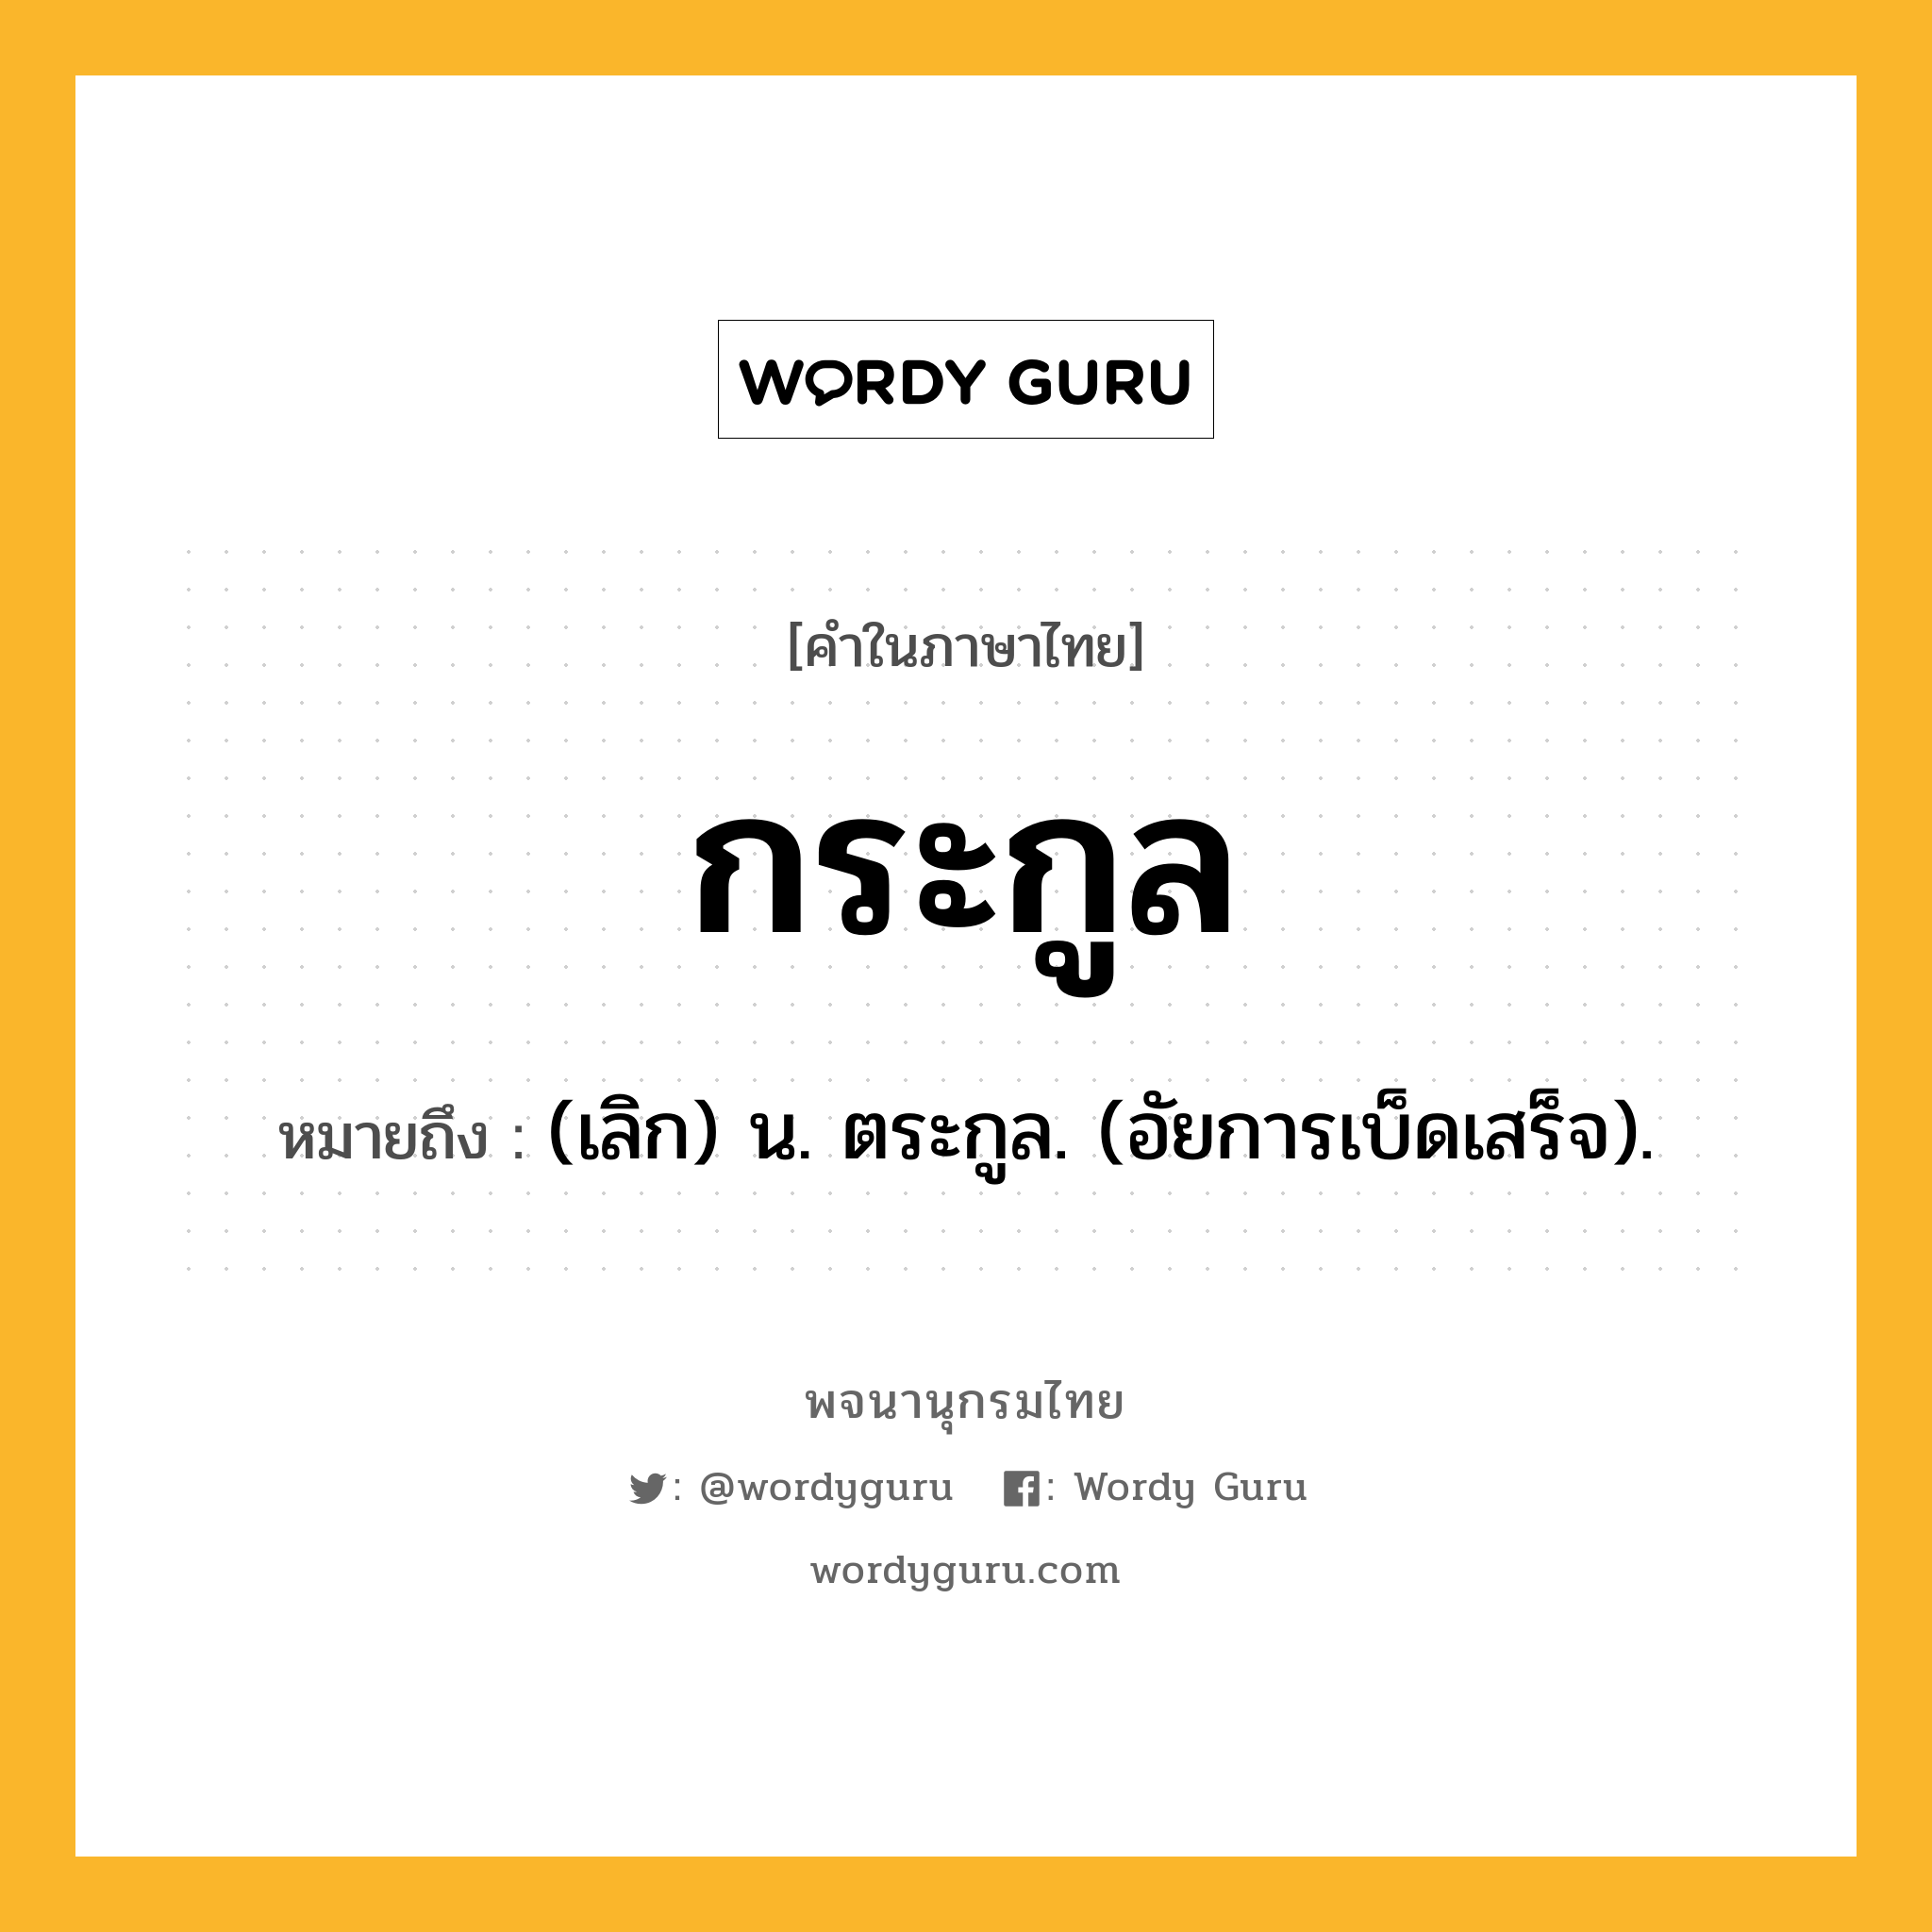 กระกูล ความหมาย หมายถึงอะไร?, คำในภาษาไทย กระกูล หมายถึง (เลิก) น. ตระกูล. (อัยการเบ็ดเสร็จ).